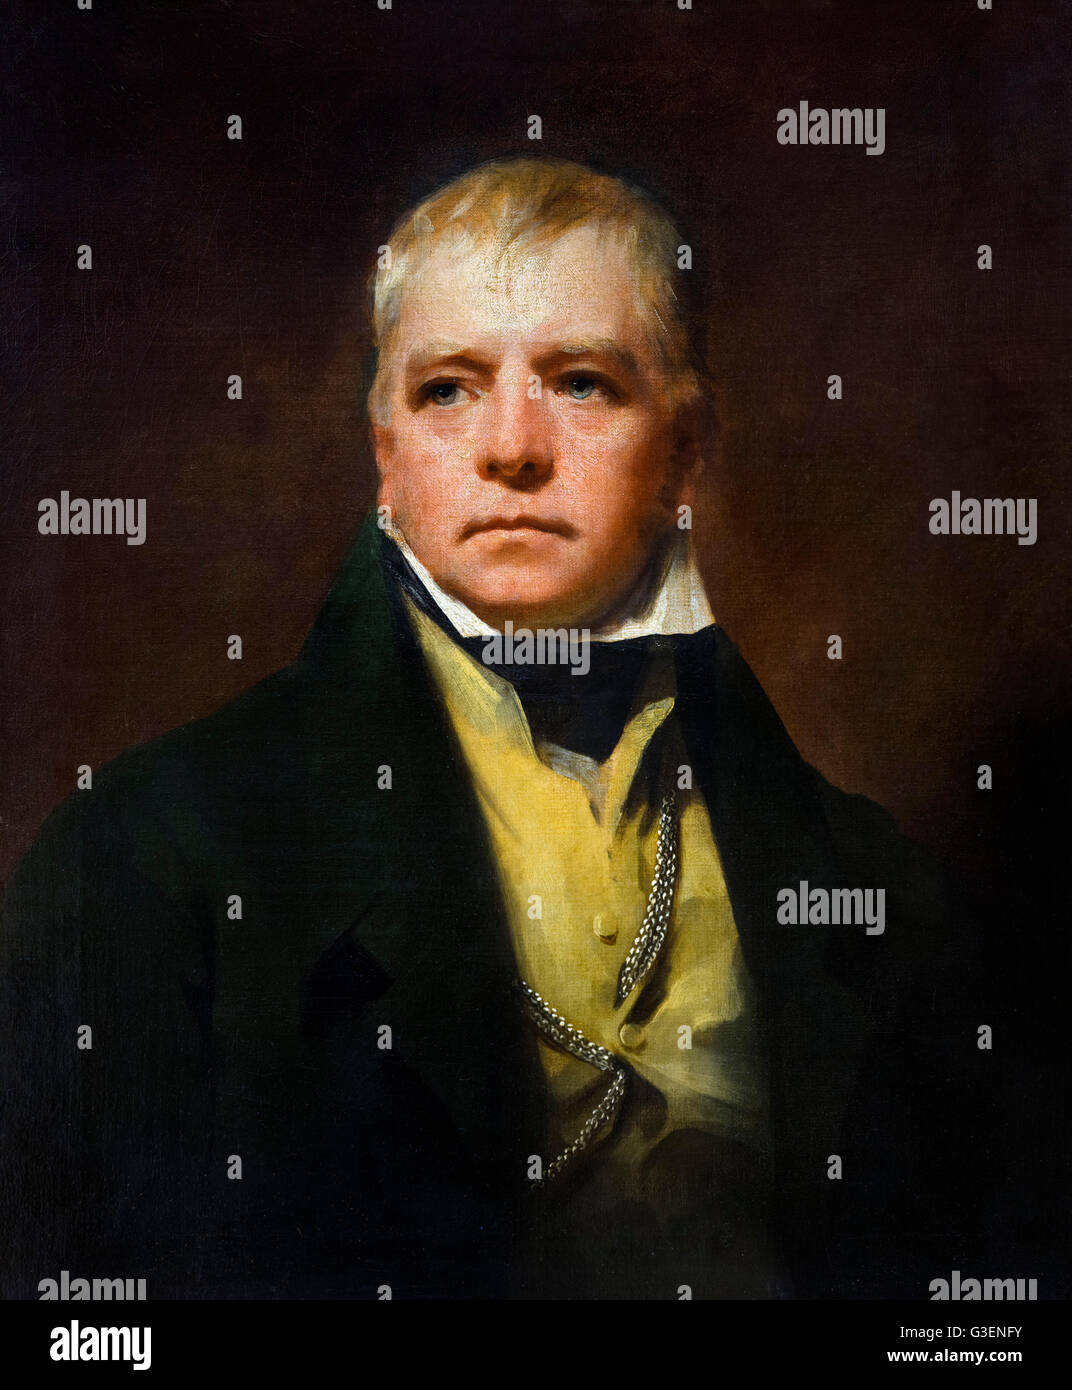 Sir Walter Scott... Porträt des schottischen Schriftstellers Walter Scott (1771 – 1832) von Henry Raeburn, Öl auf Leinwand, 1822. Stockfoto